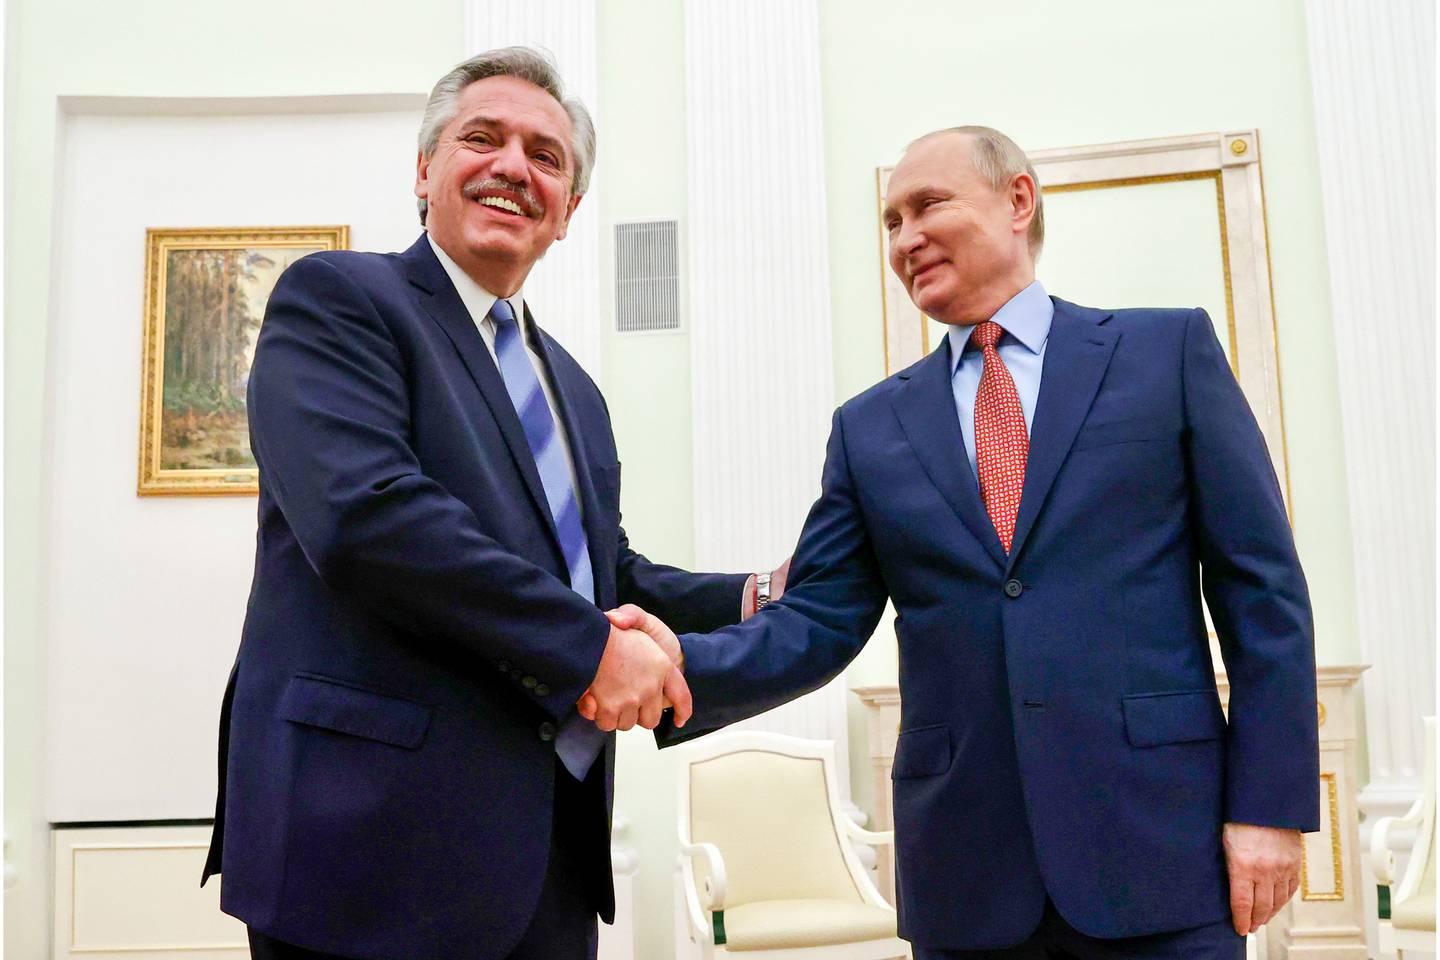 Reunión que se llevó a cabo en febrero del 2022, previo a la invasión a Ucranadfd